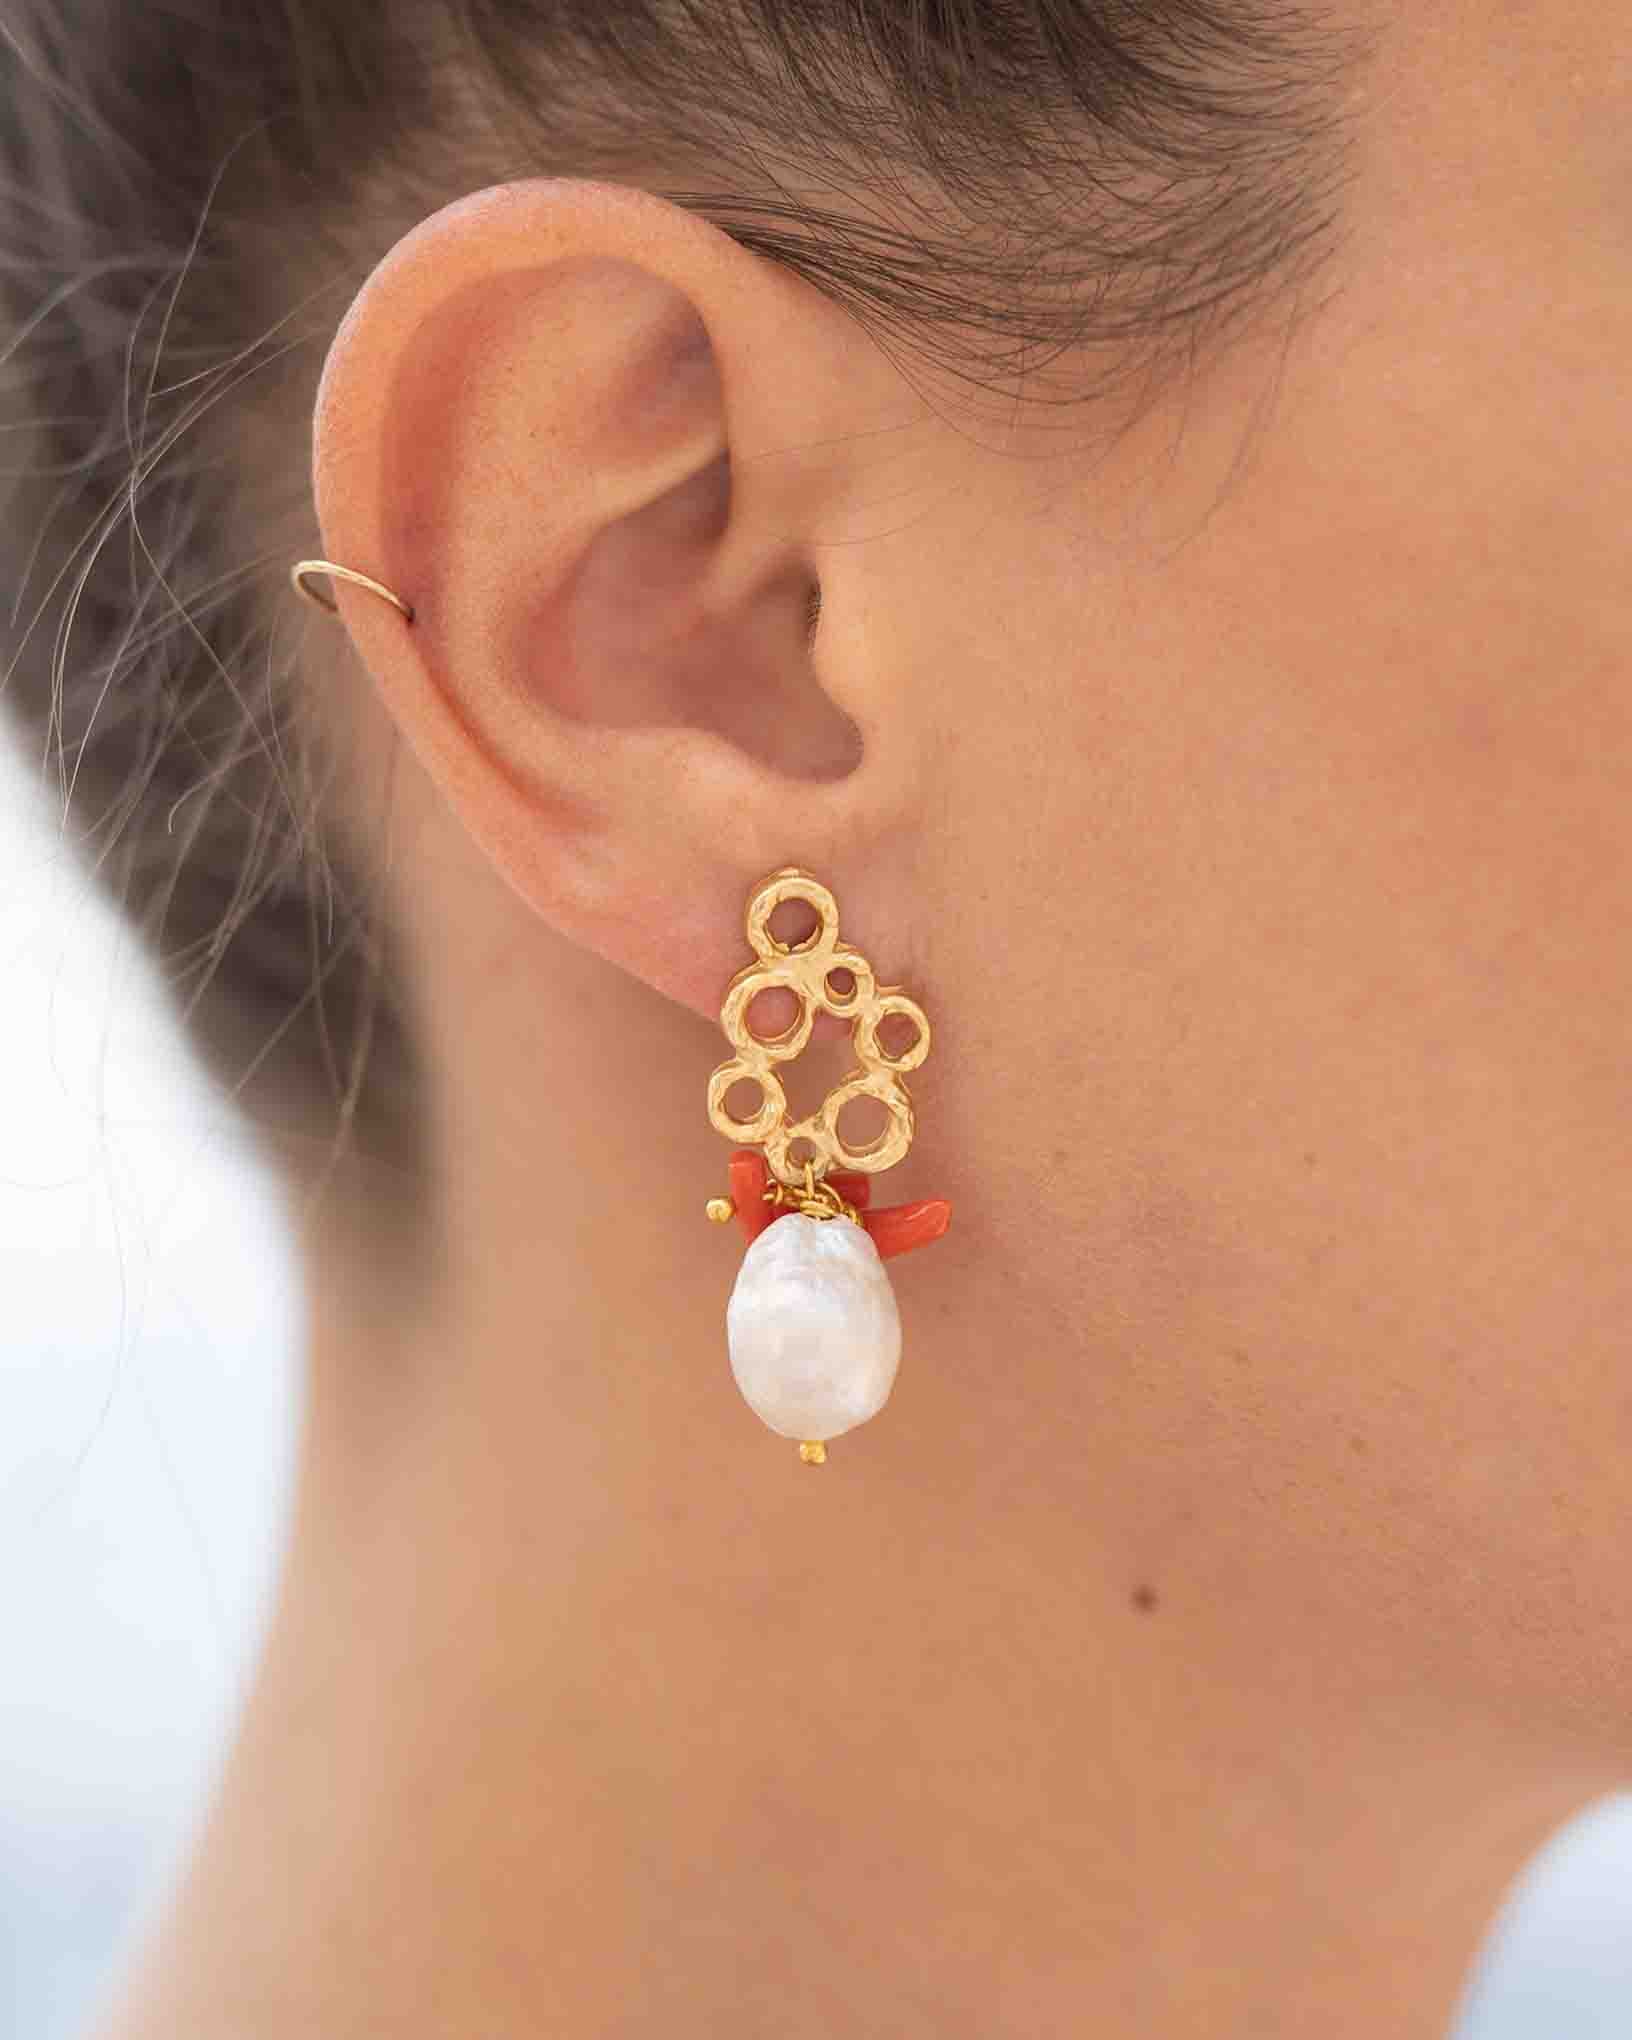 Ohrring Bora aus der Kollektion Perle e Coralli von Donna Rachele Jewelry